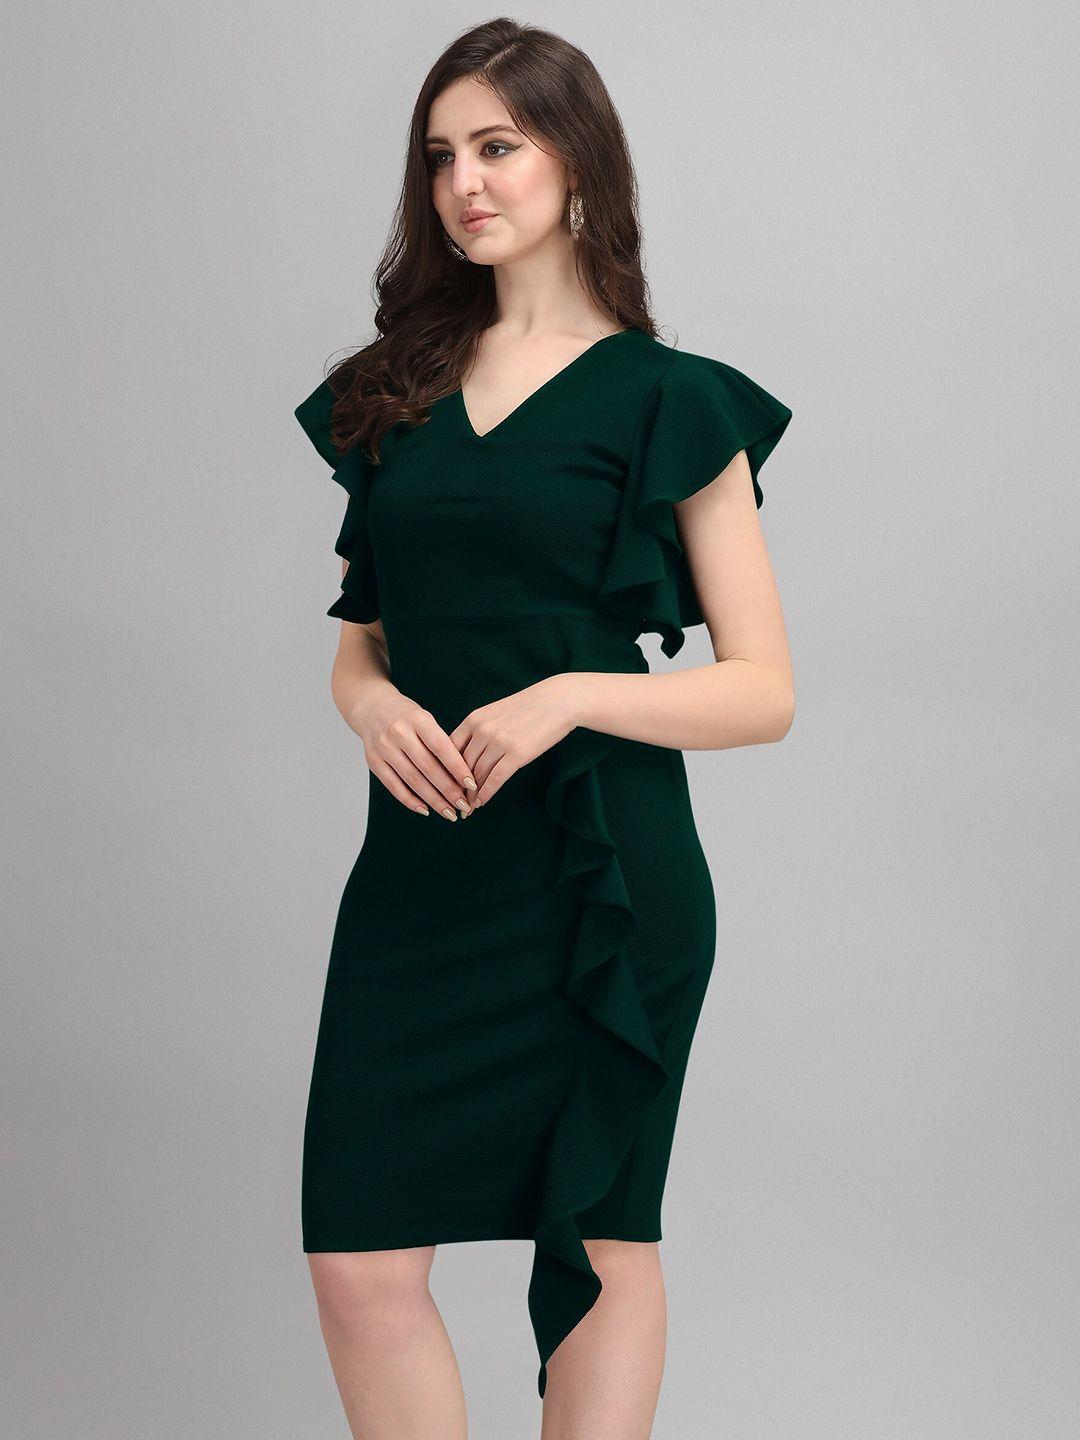 SHEETAL Associates Green A-Line Dress